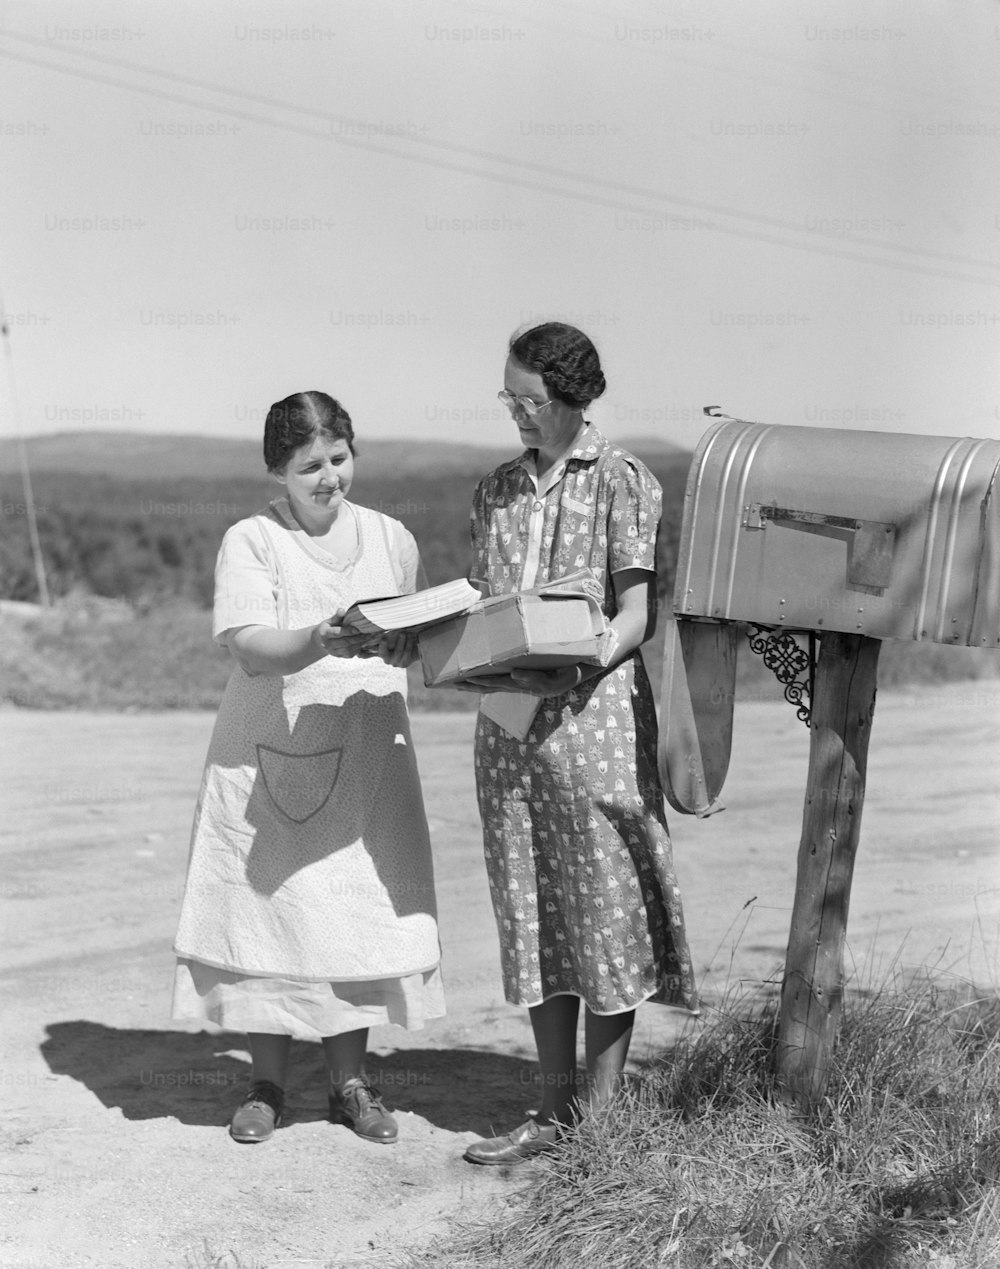 アメリカ合衆国 - 1940年代頃: 2人の女性が国の郵便受けから郵便物を集める。